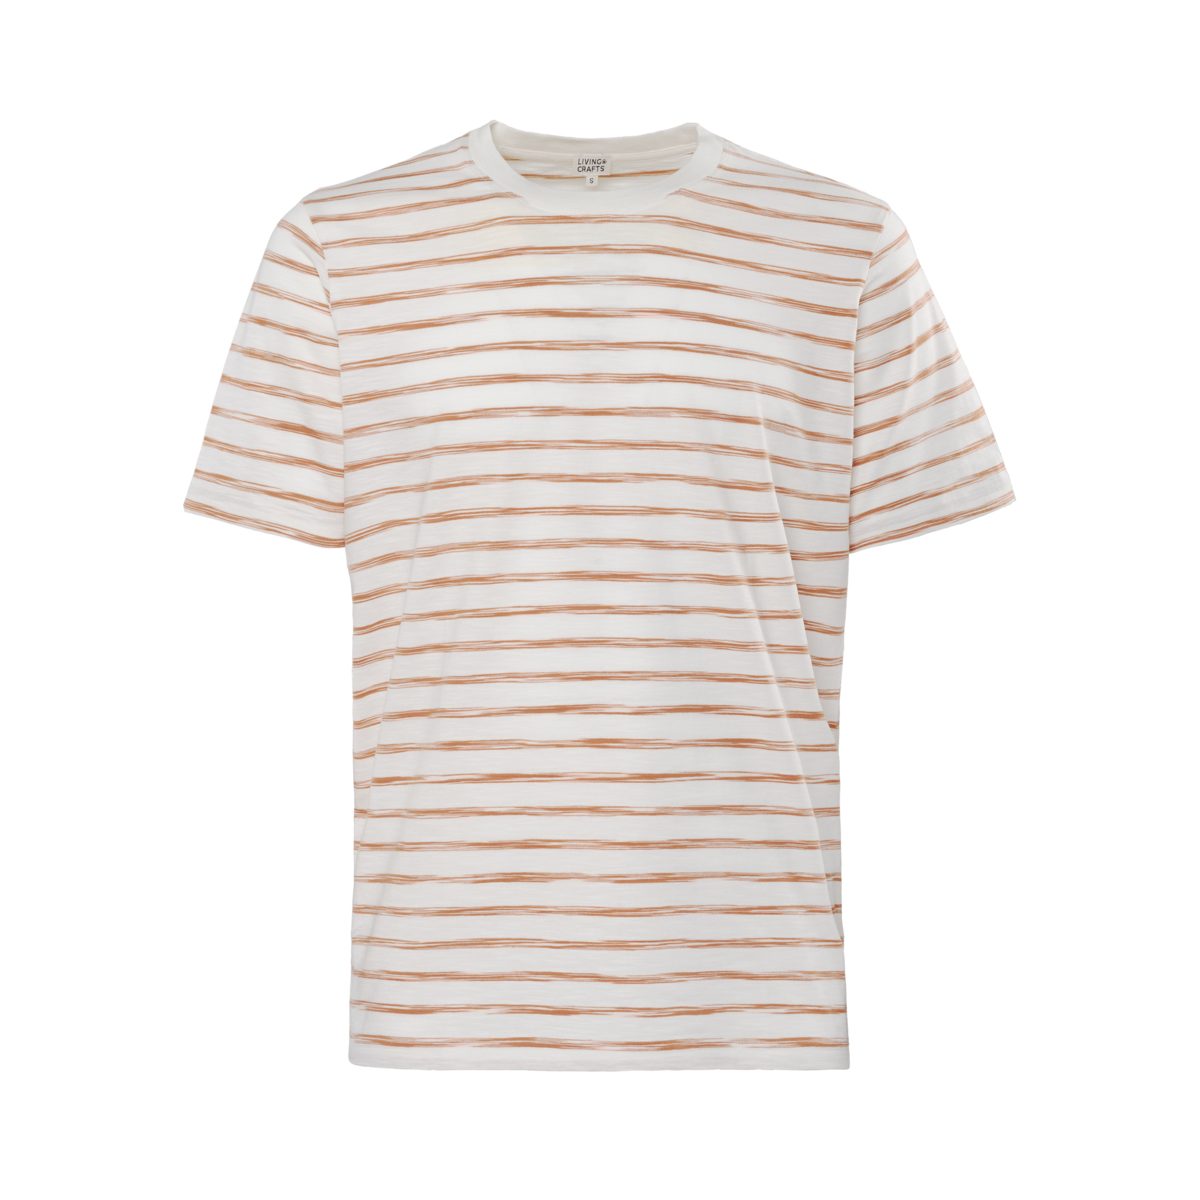 Raw CRAFTS aus ODIN Sienna/Offwhite T-Shirt weichem Luftiges besonders LIVING Design Slub-Garn